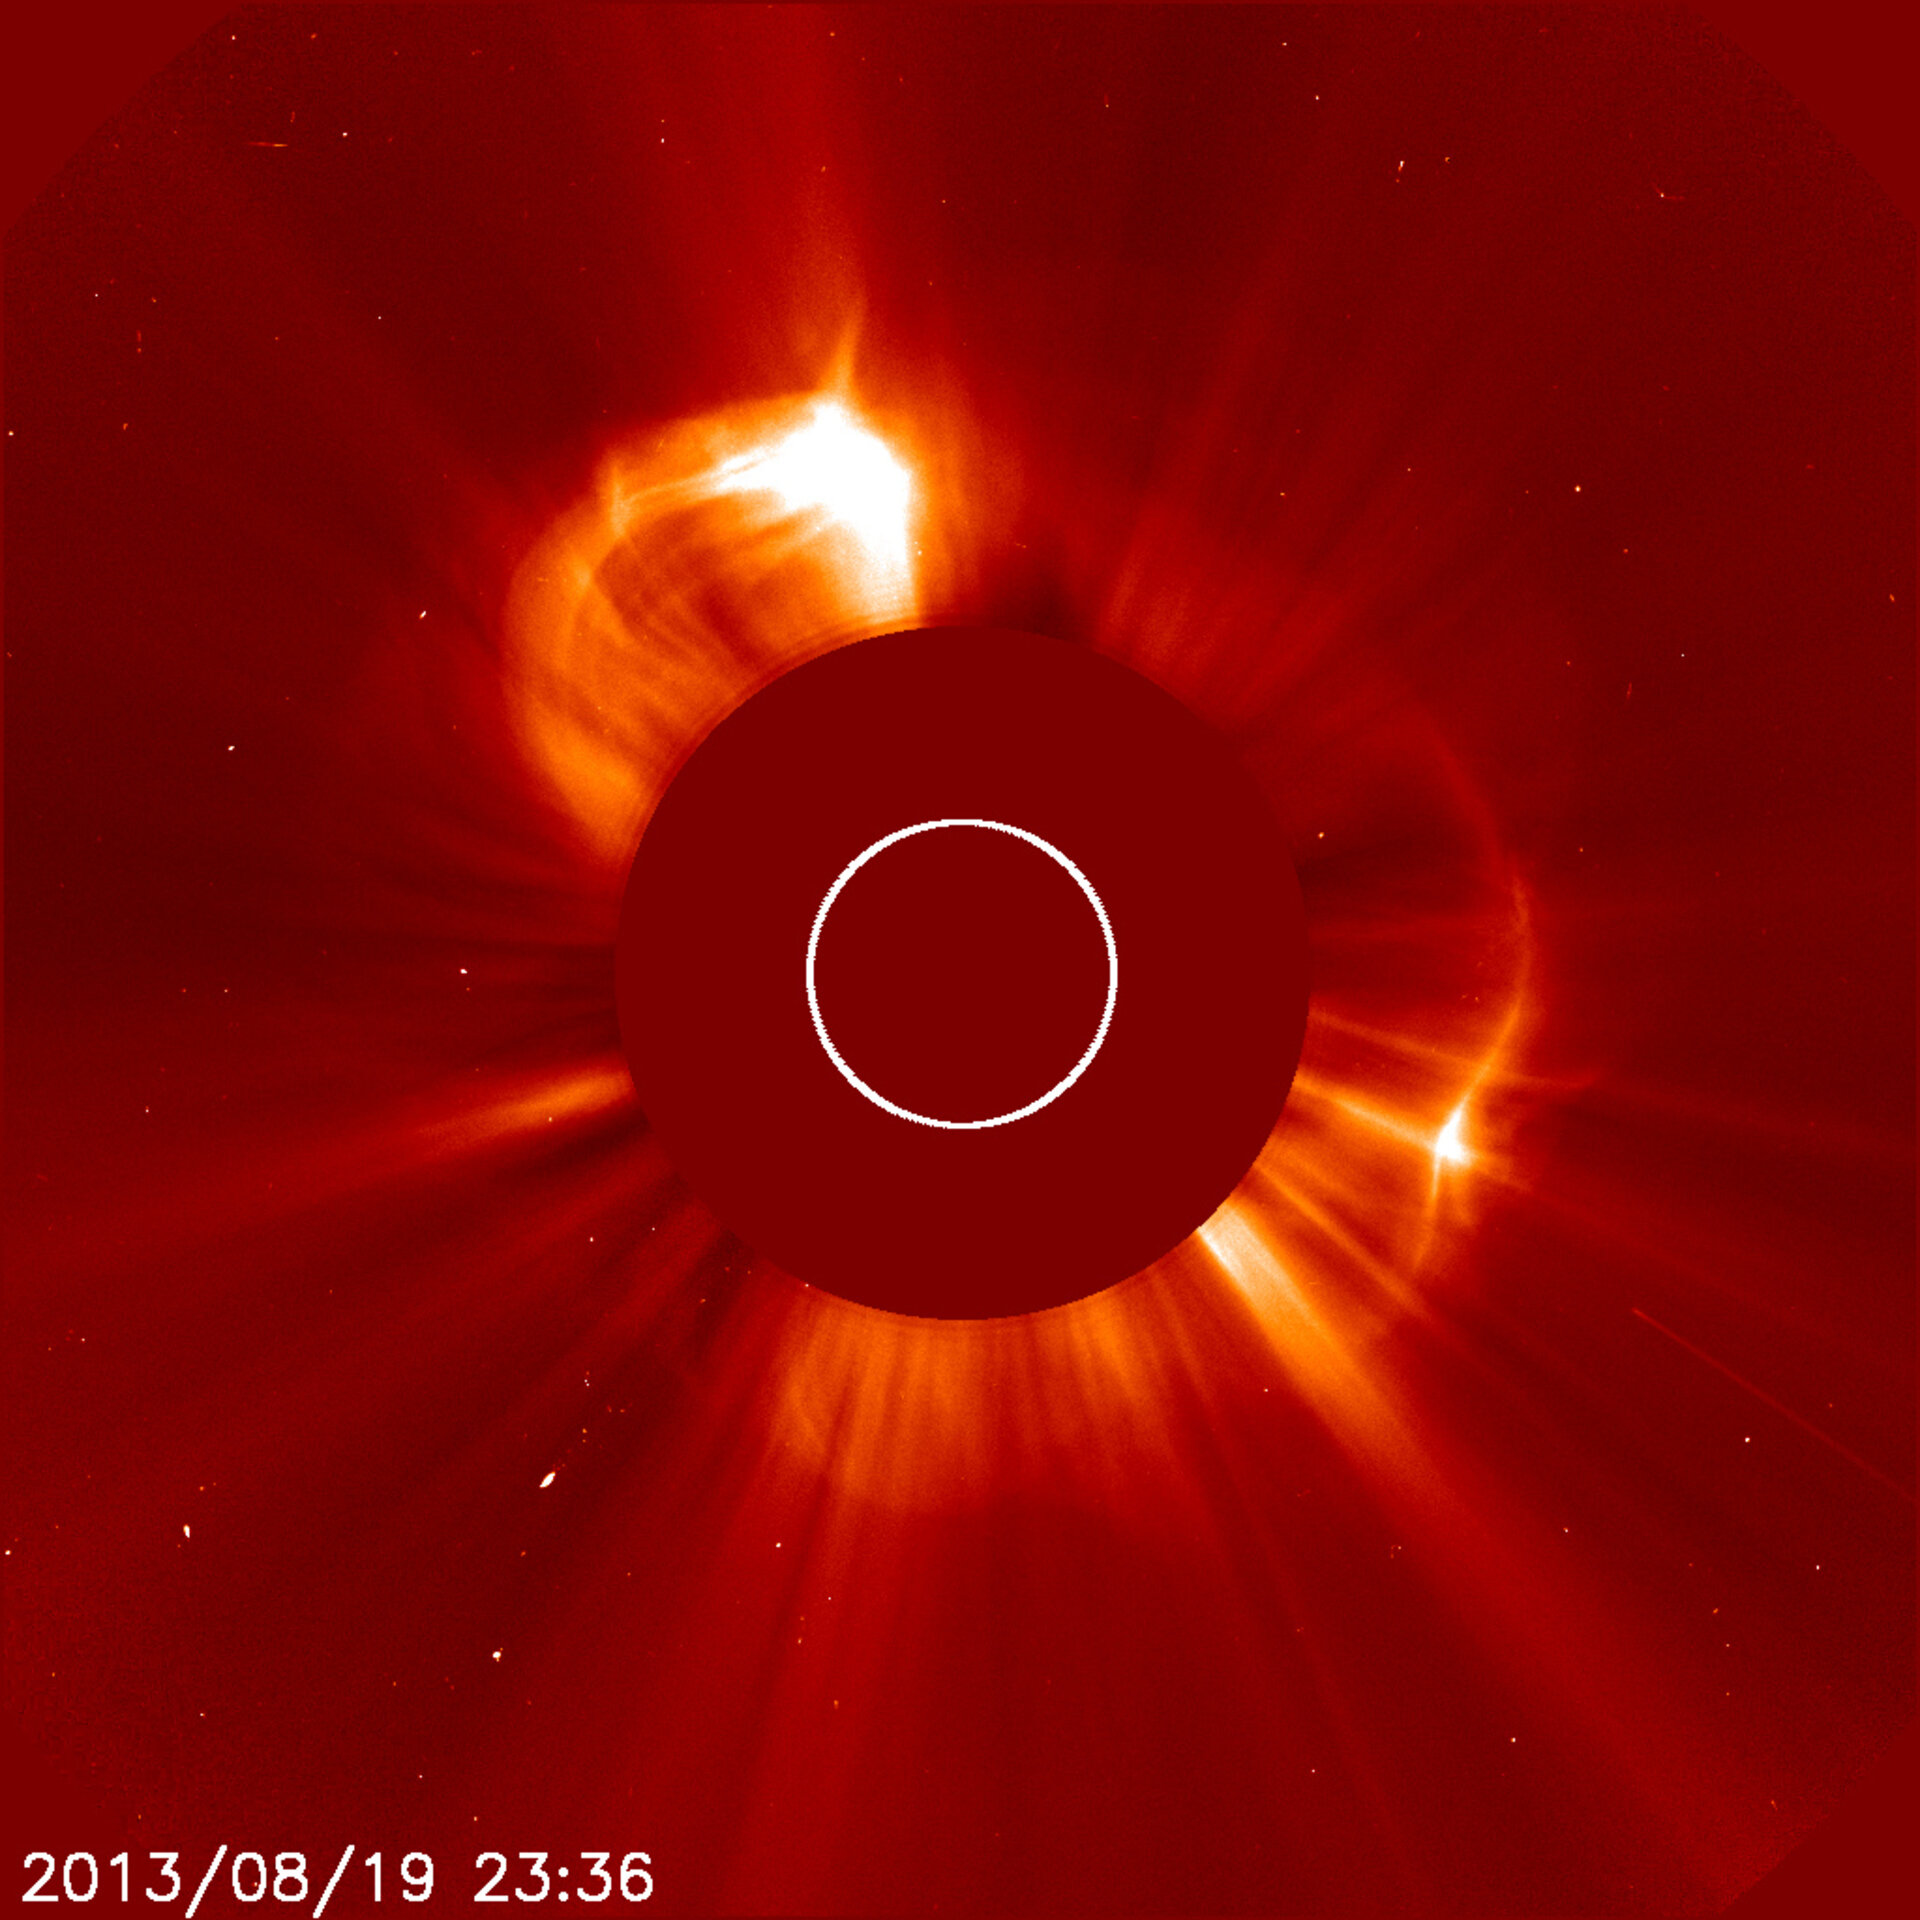 Sun-diving comet meets solar storm